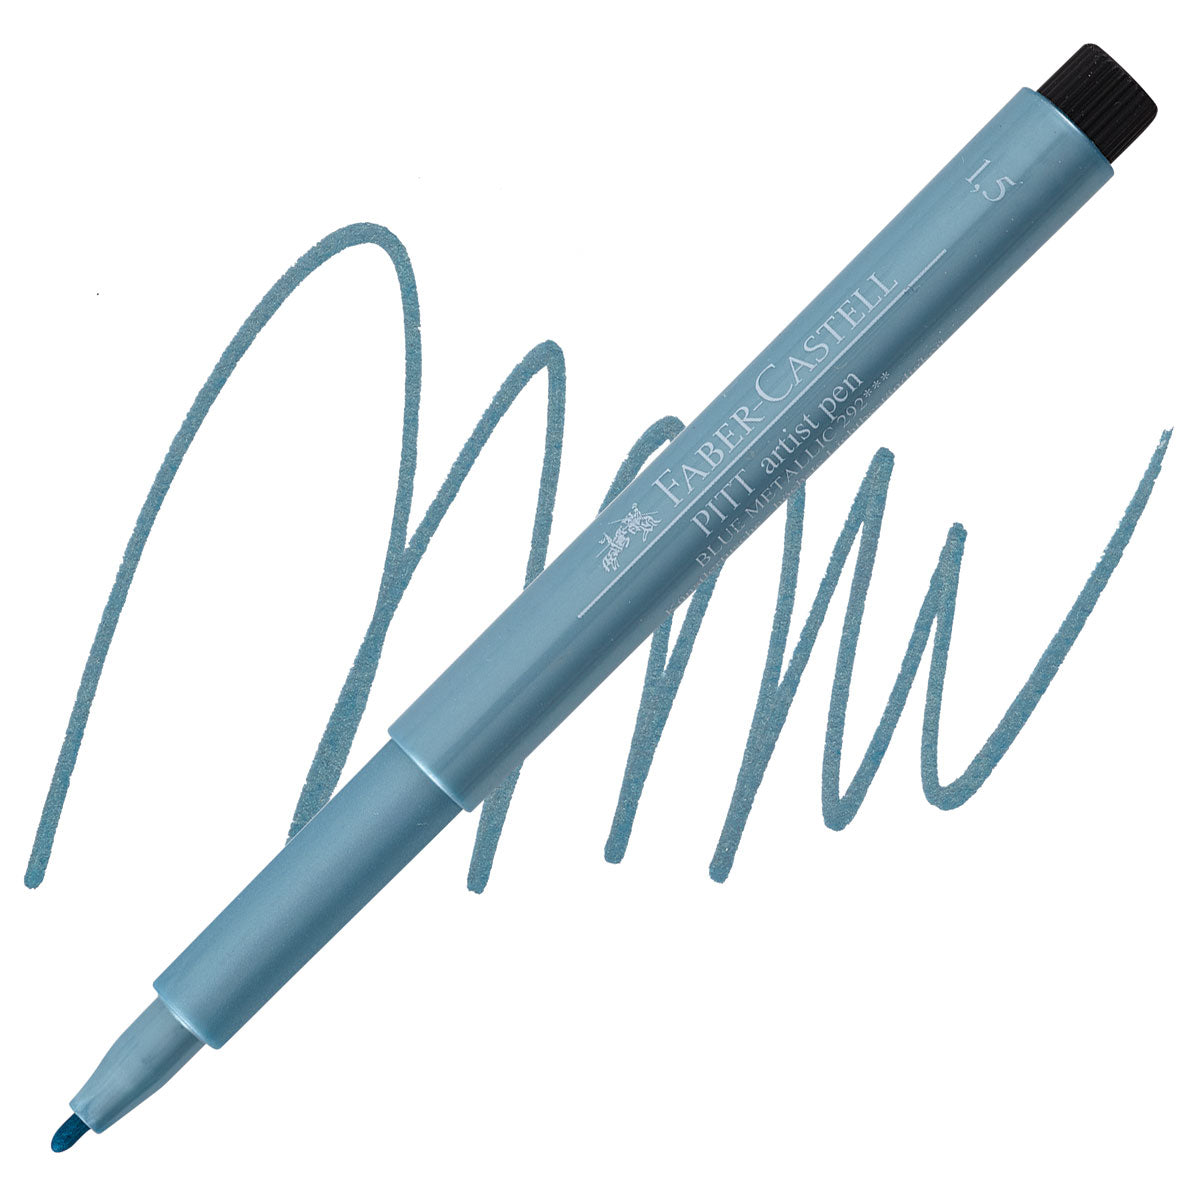 Faber-Castell PITT Pen (Bullet/Fineliner/Calligraphie)